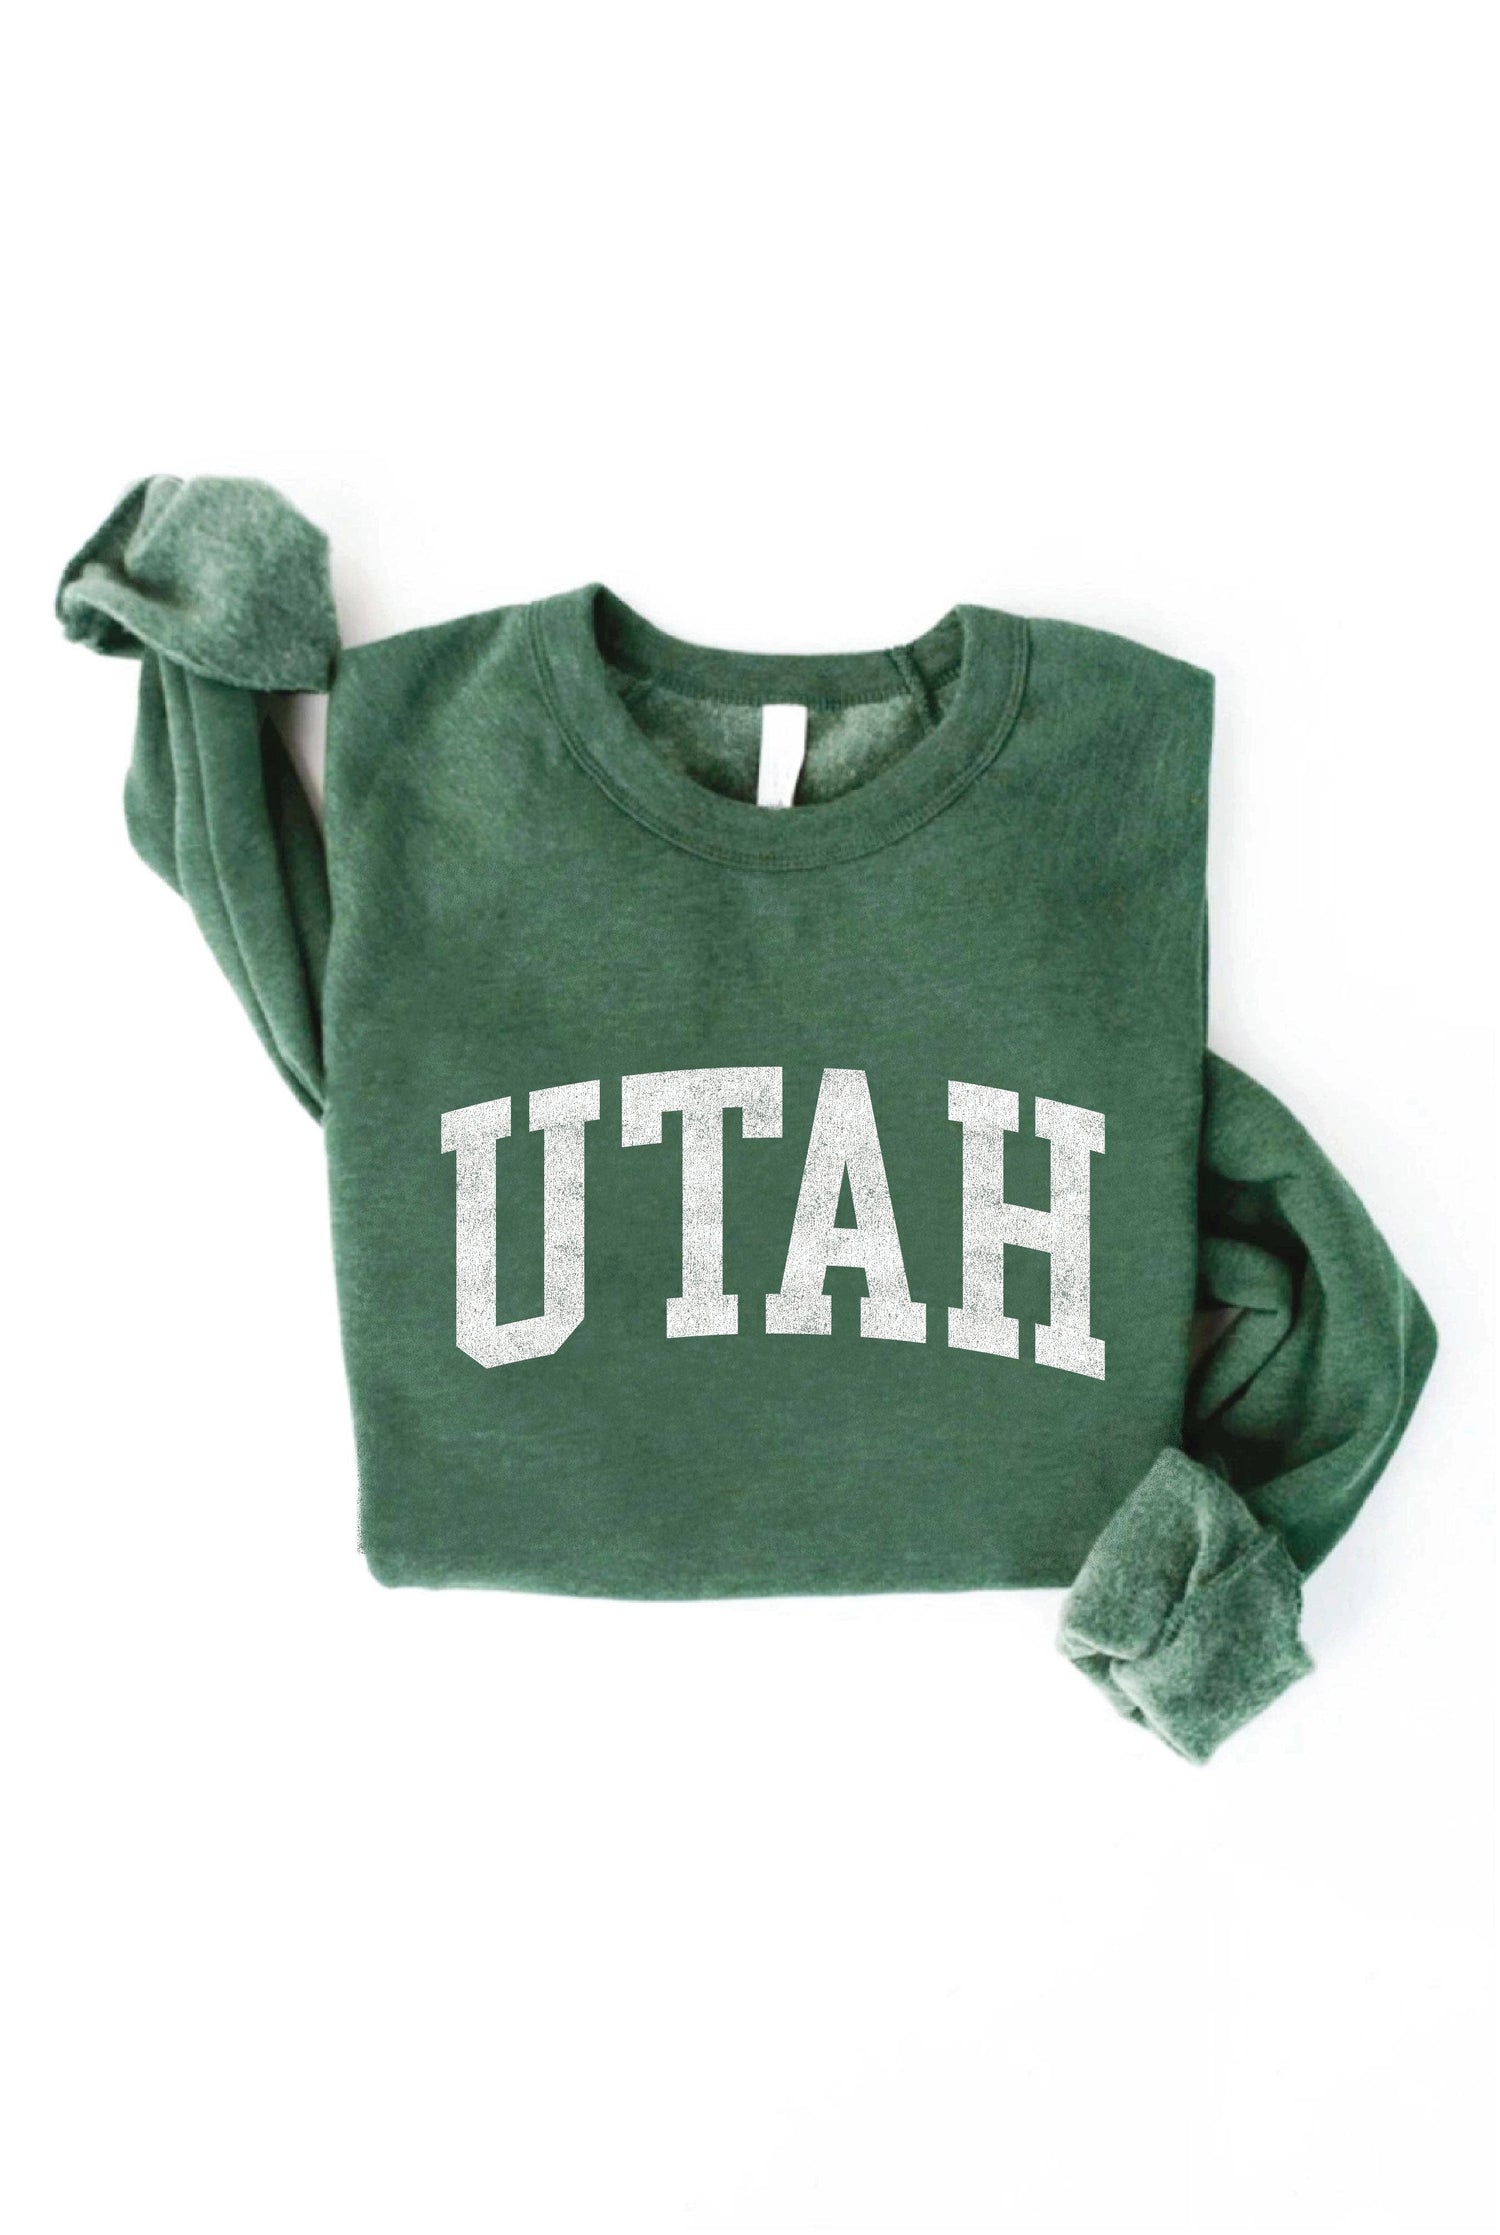 Utah Graphic Sweatshirt